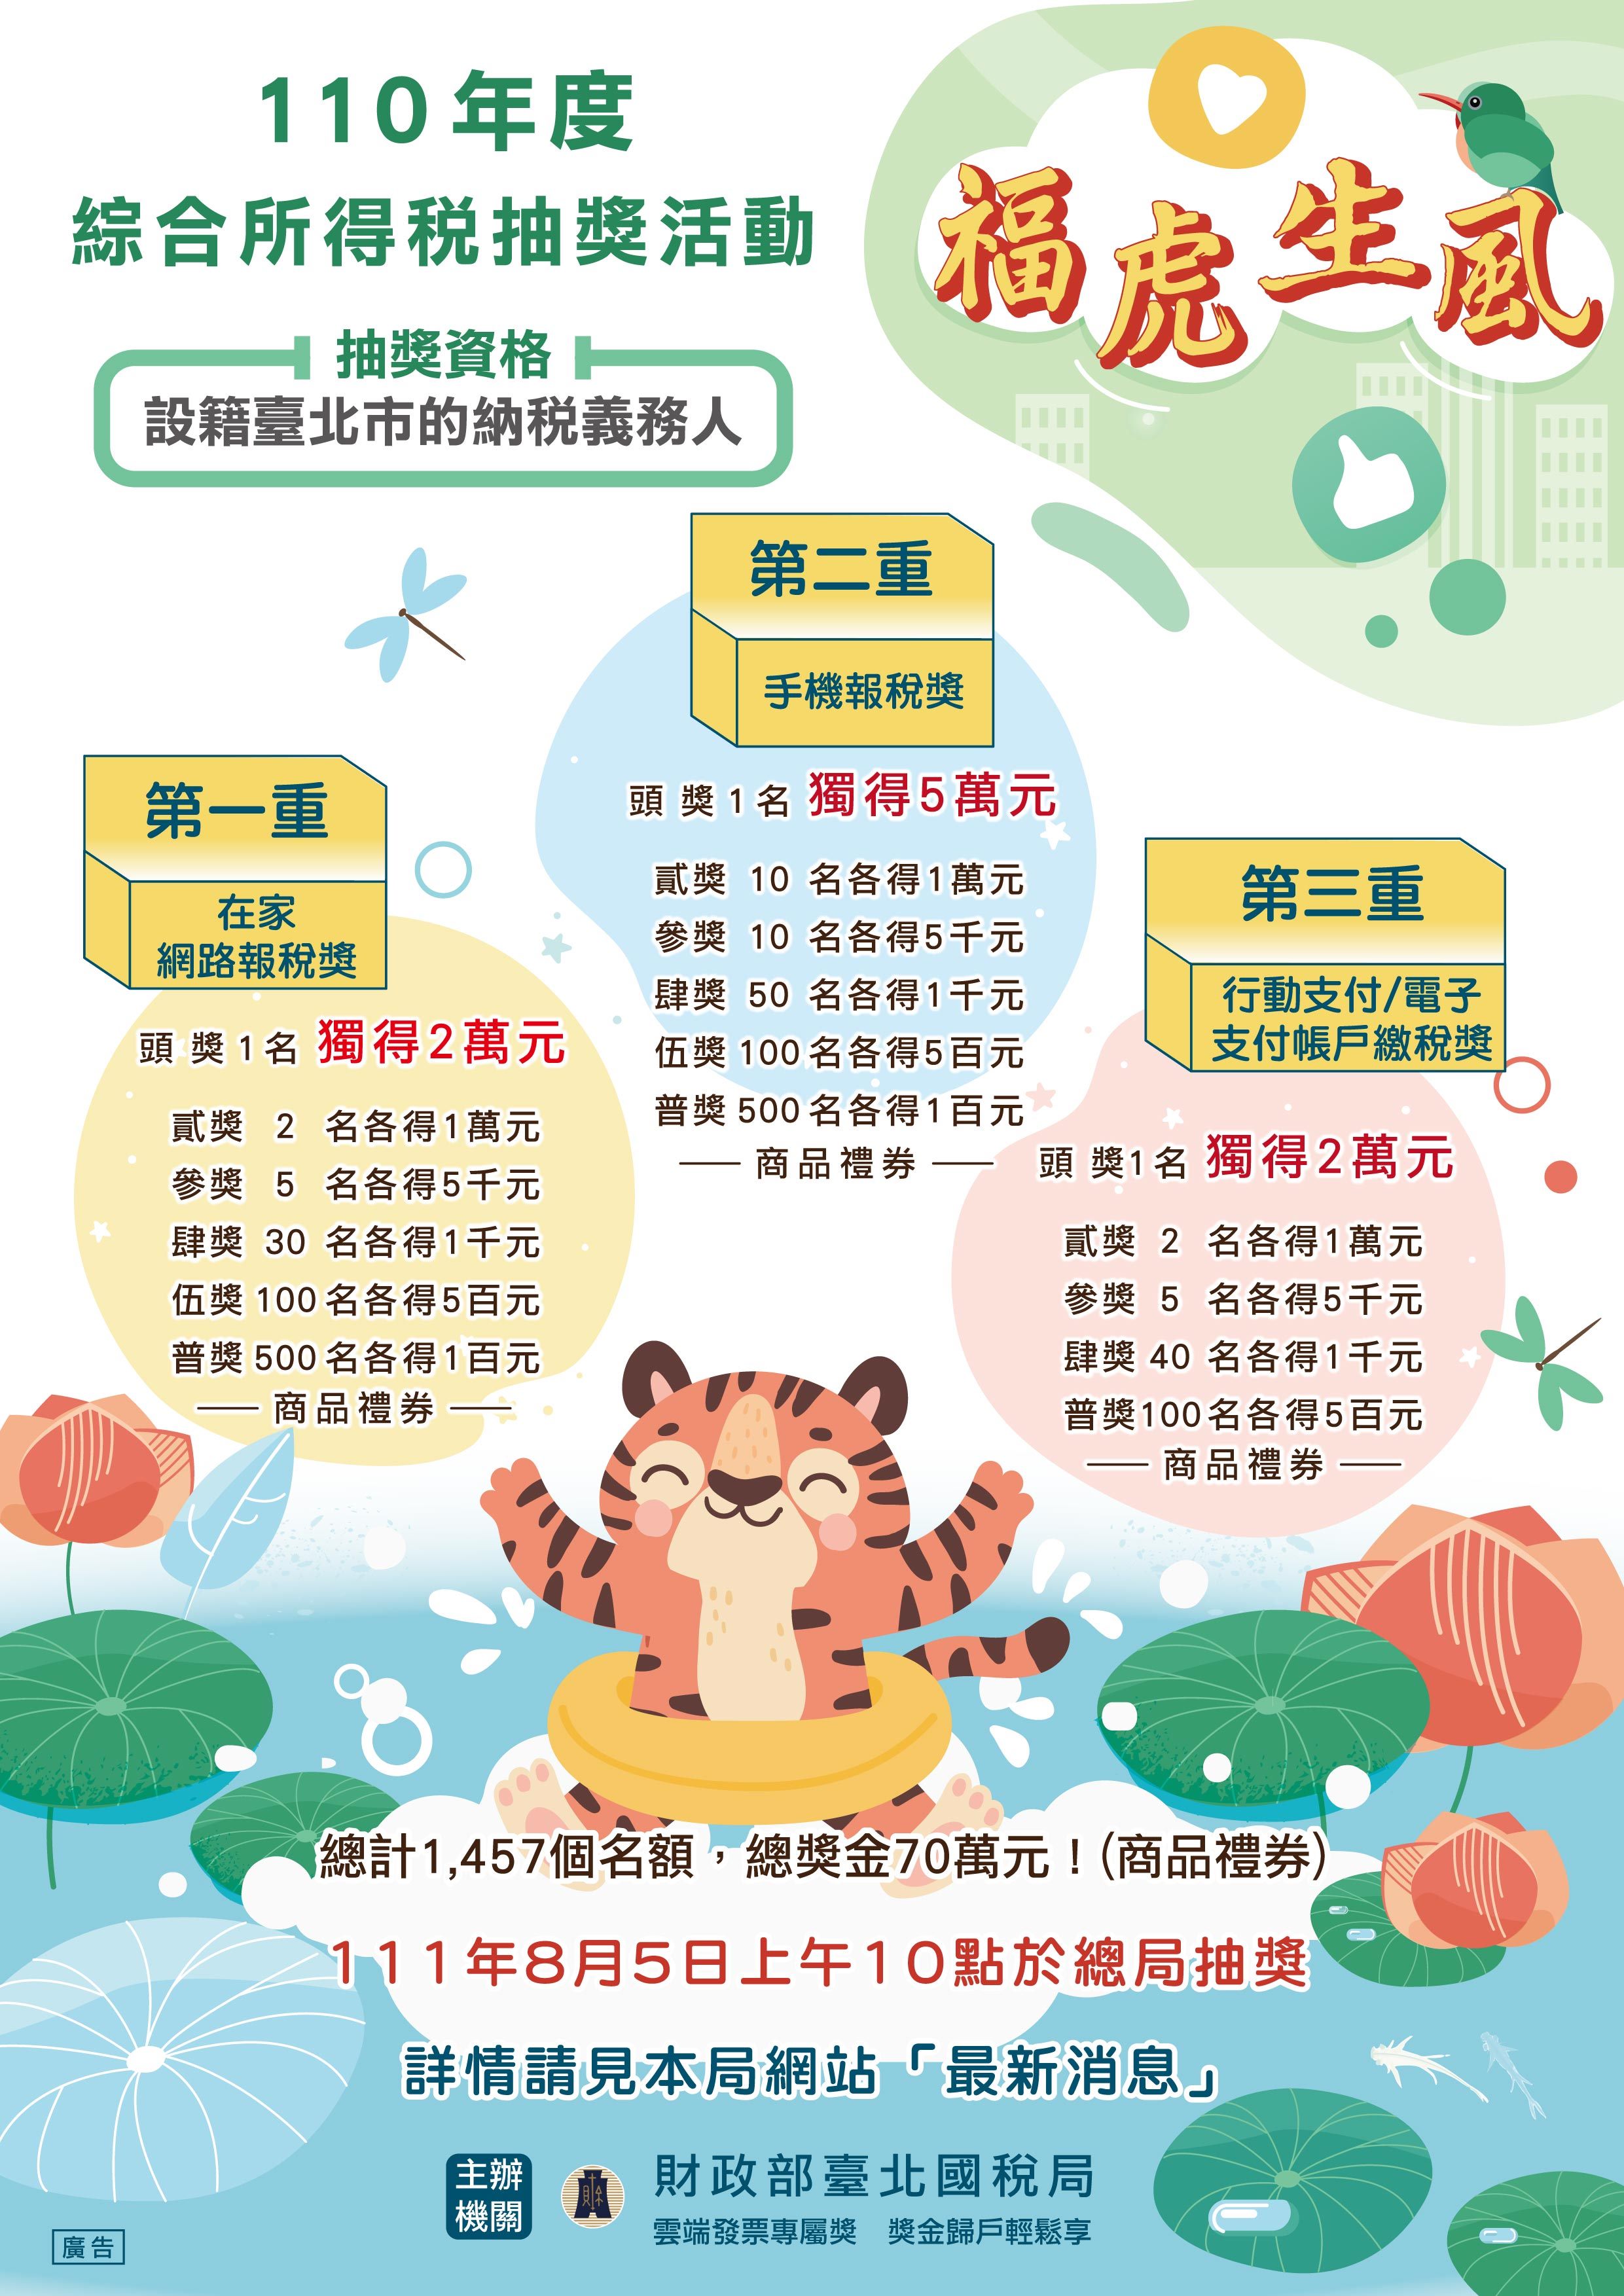 【宣傳】財政部臺北國稅局舉辦「福虎生風」報稅抽獎活動。